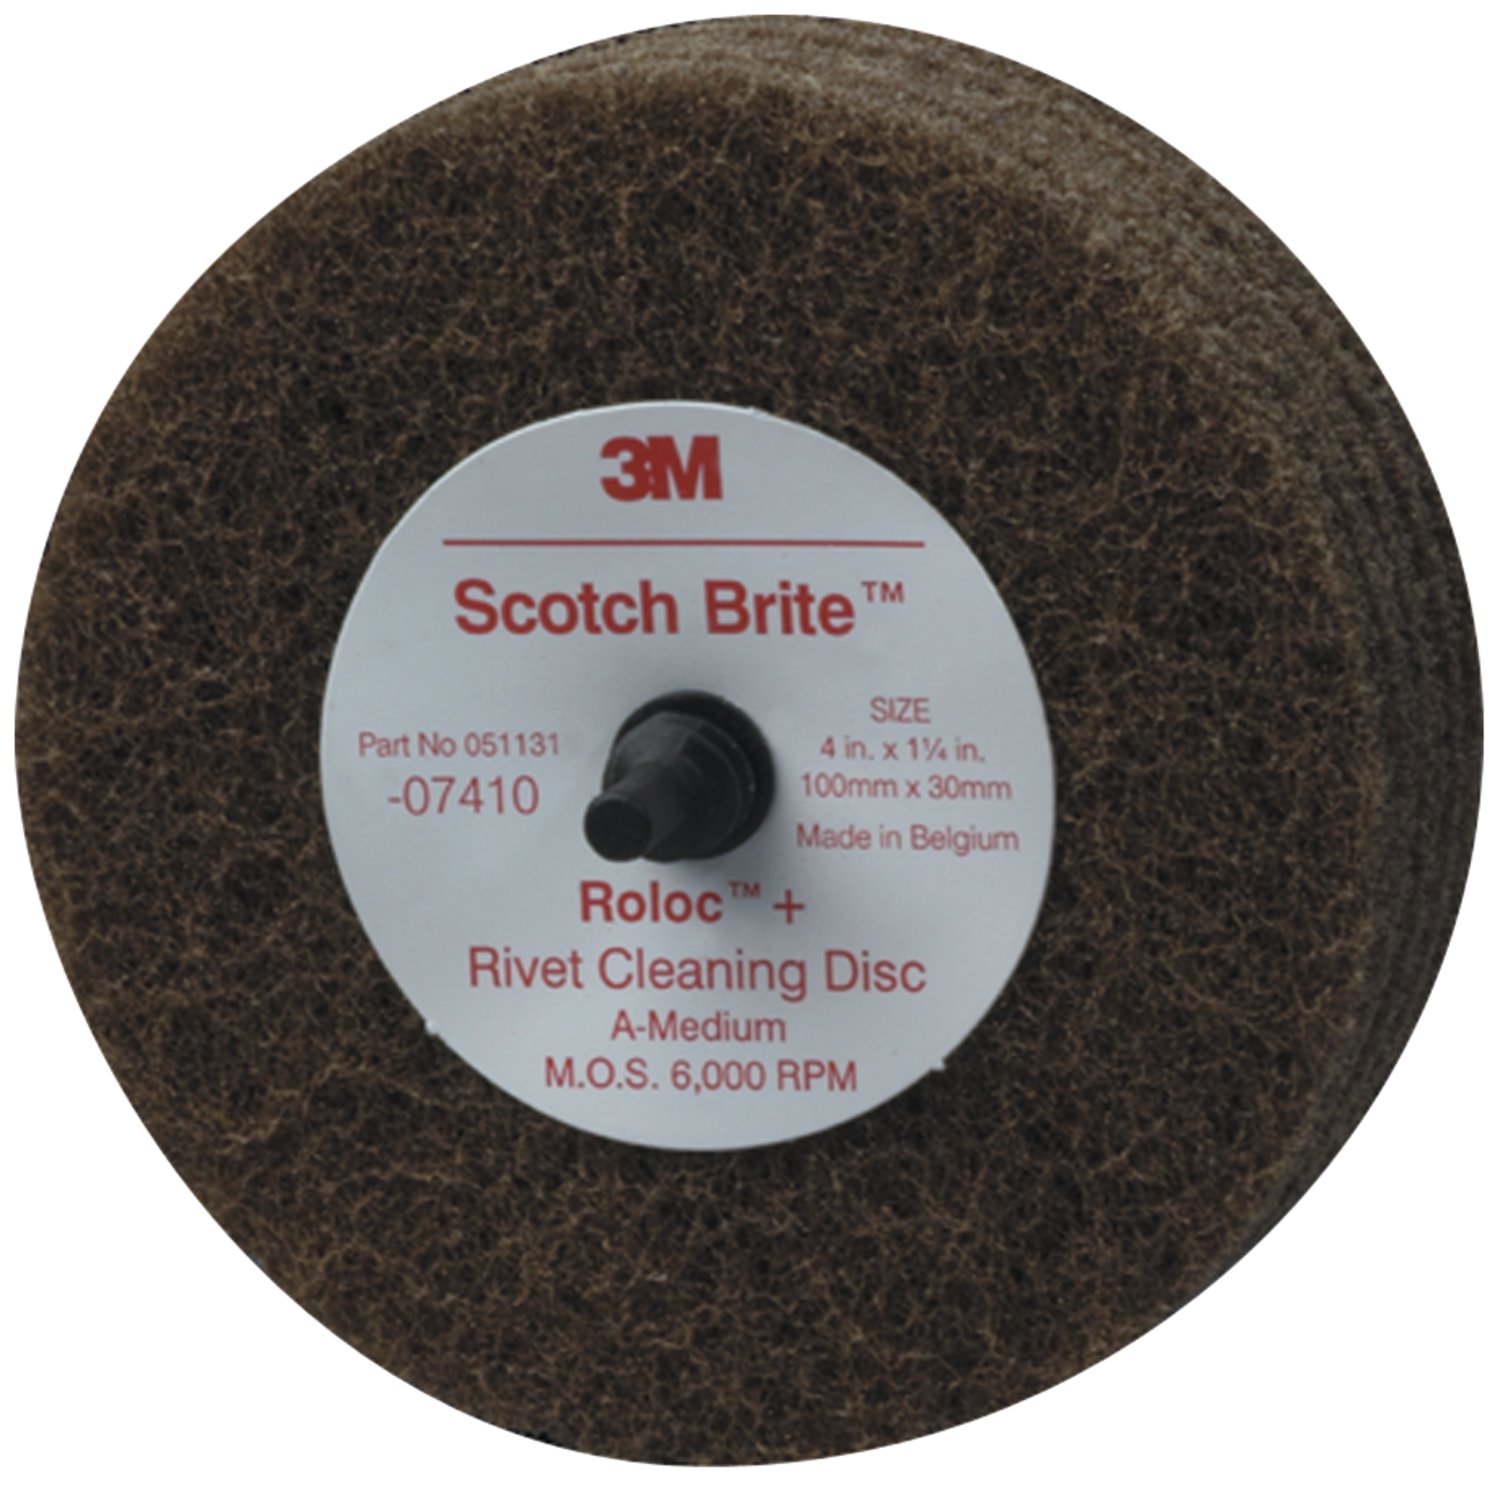 7000120778 - Scotch-Brite Rivet Cleaning Disc 07410, 4 in x 1-1/4 in A MED, 10
ea/Case